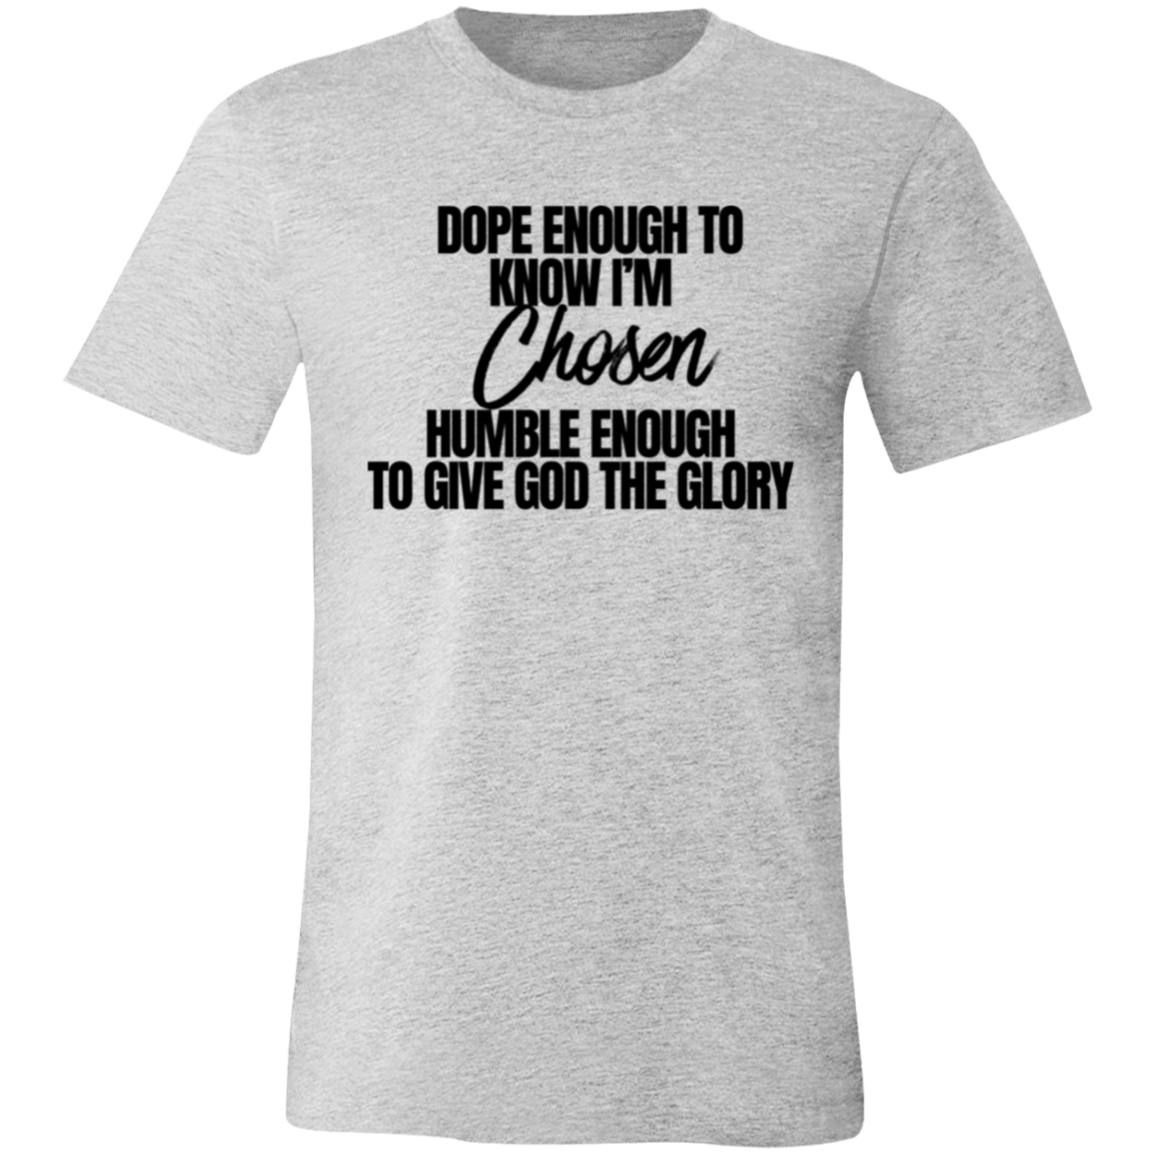 Women's Chosen T-Shirt